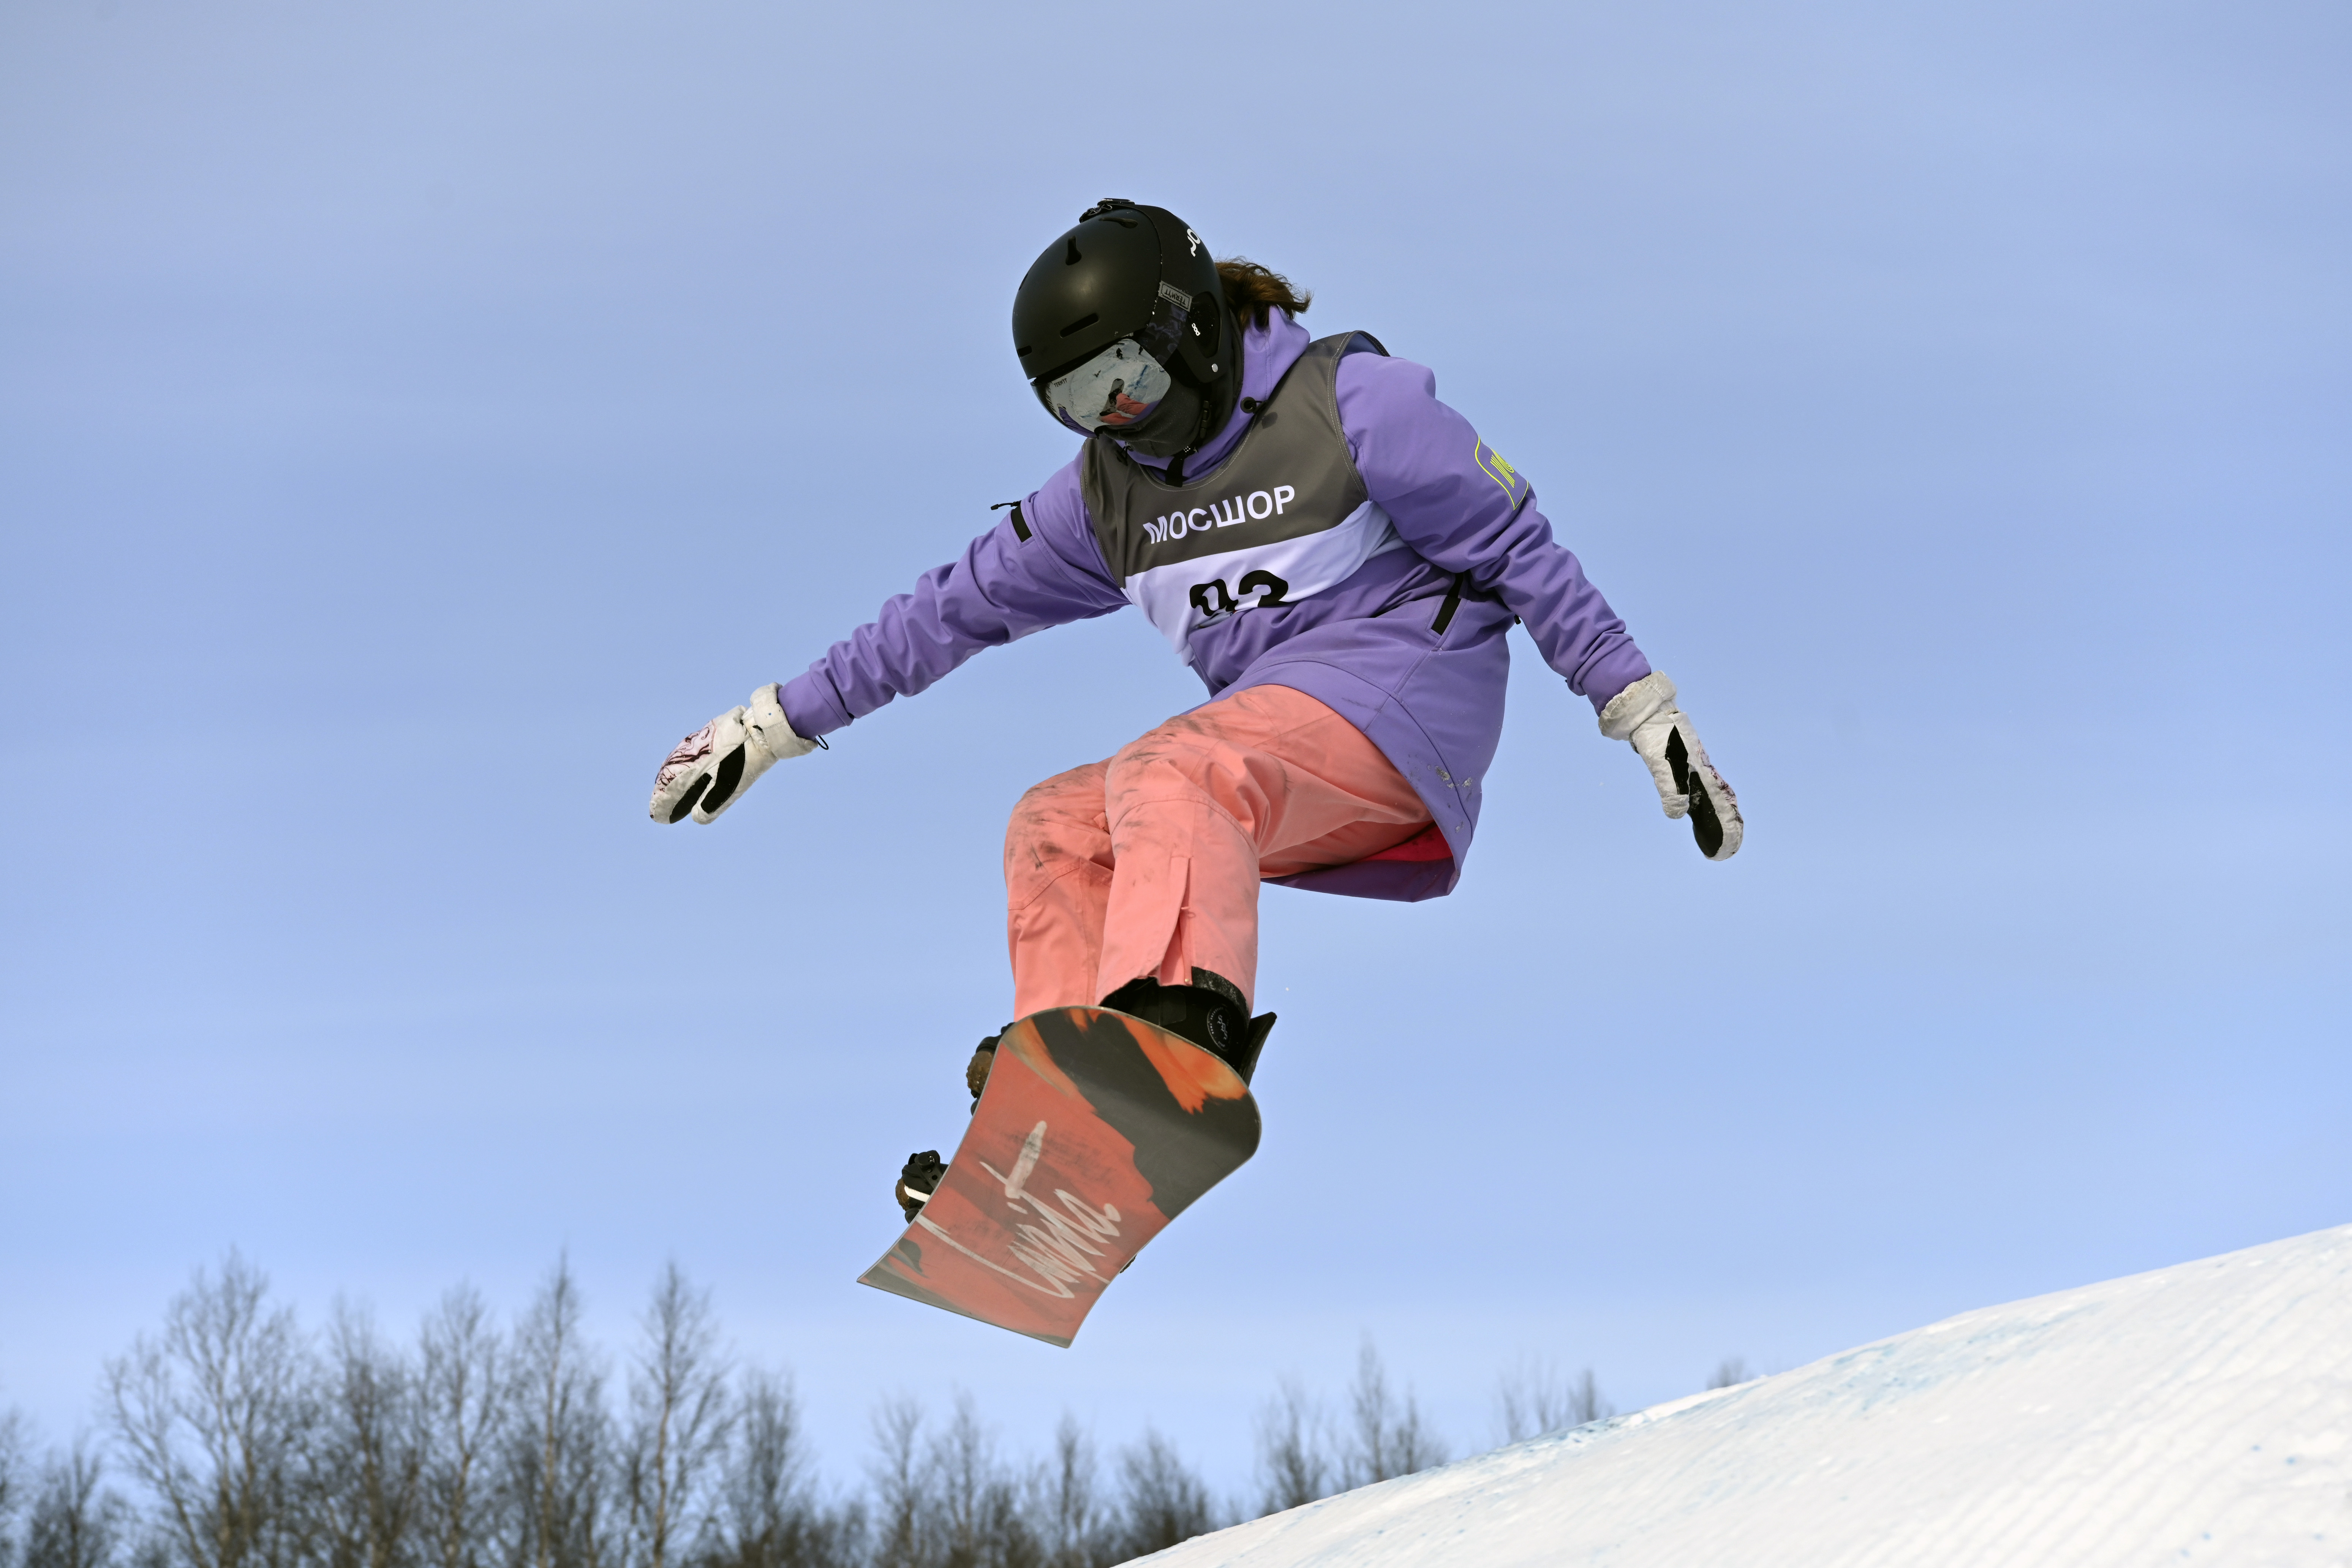 В рамках 63-го Праздника Севера учащихся на Южном склоне в Мурманске состоялись соревнования по сноуборду